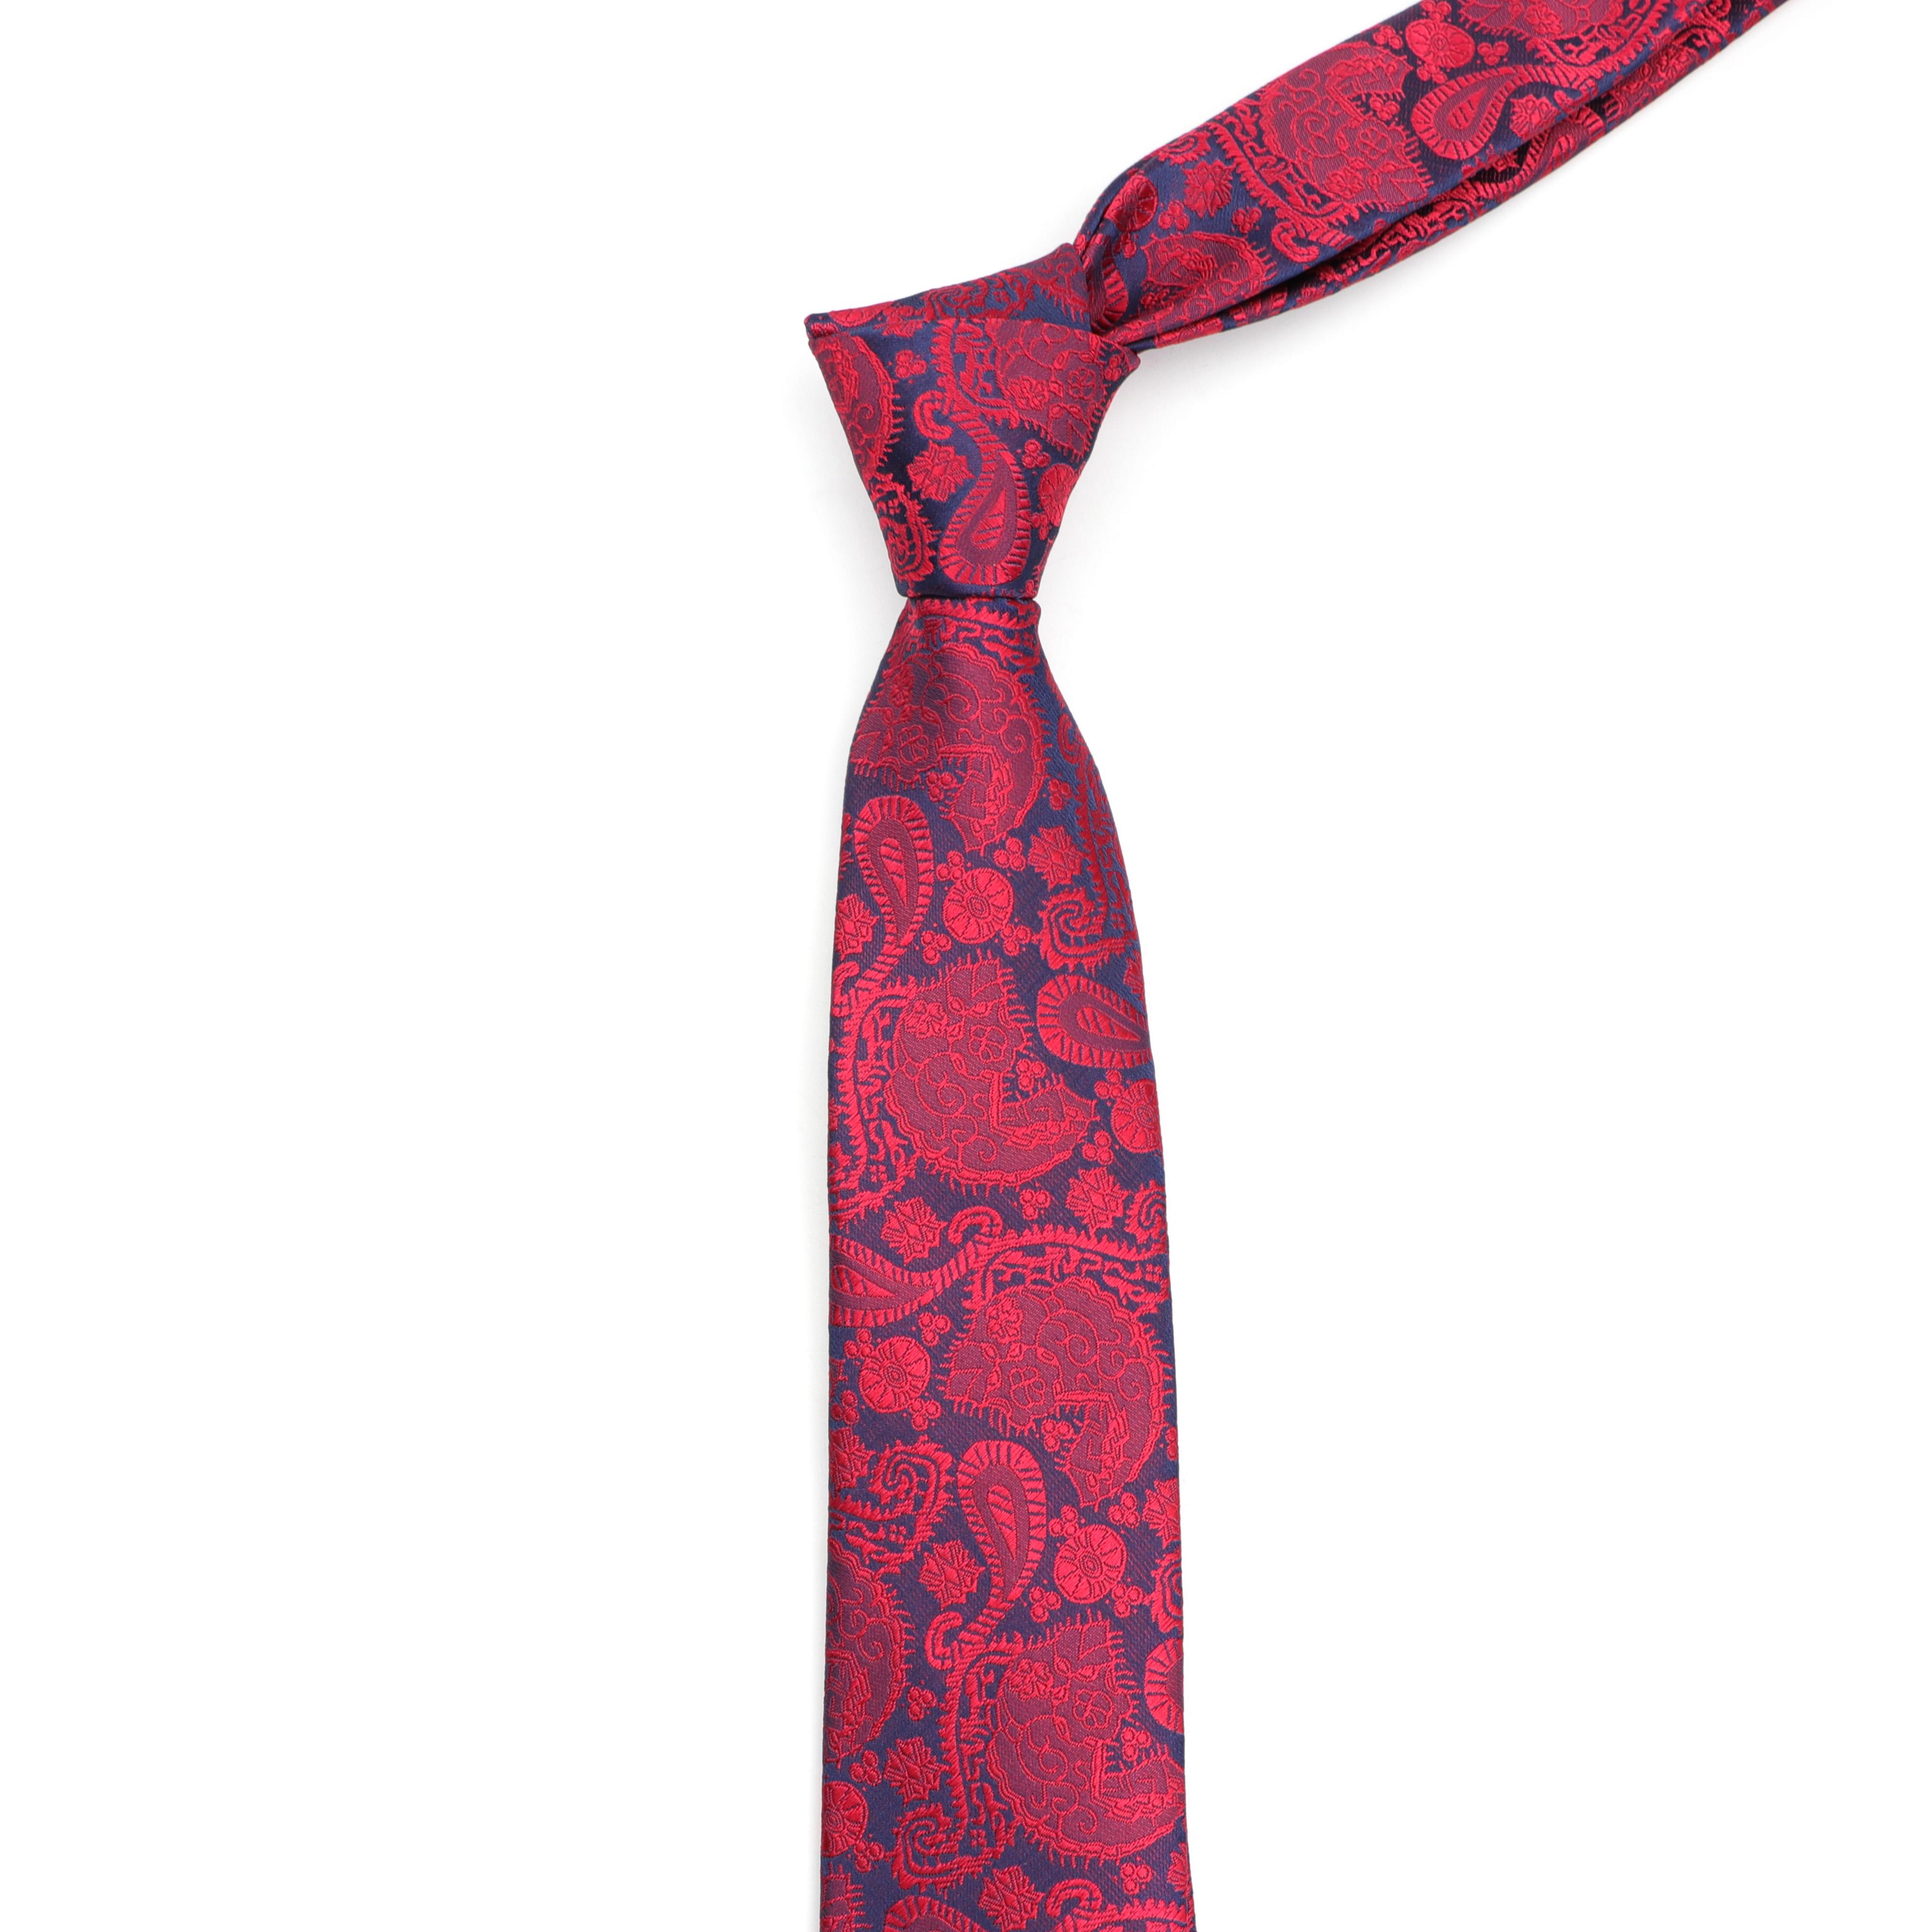 Изображение товара: Мужской галстук полиэстер узкий принт жаккардовый тканевый Галстук + Hanky + бабочка наборы для формальной Свадебная деловая вечеринка